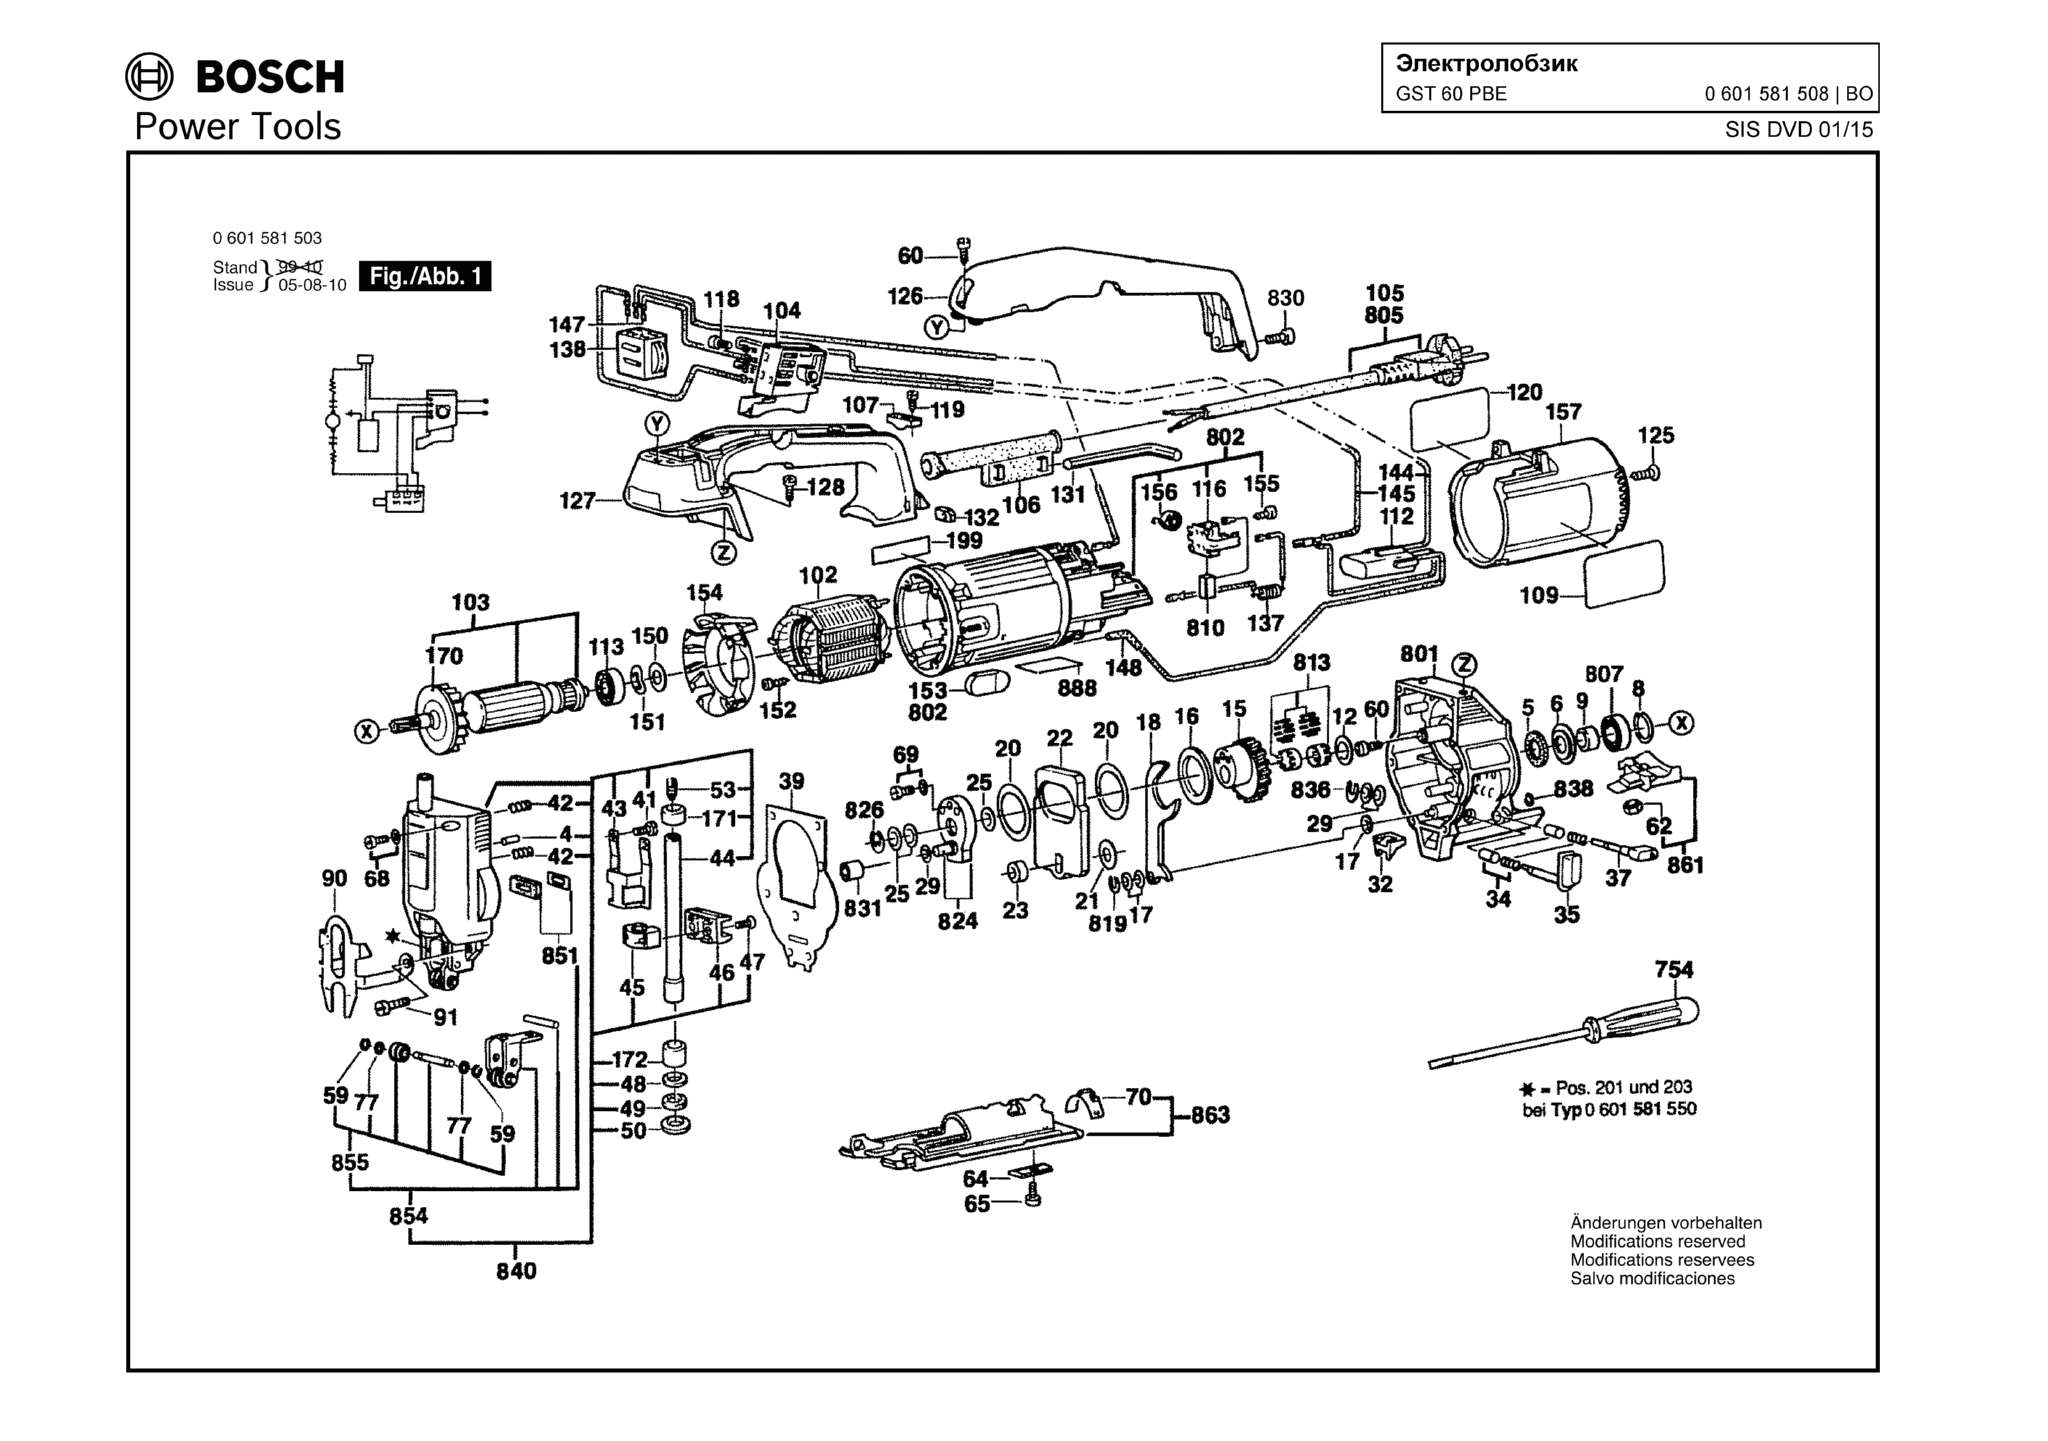 Запчасти, схема и деталировка Bosch GST 60 PBE (ТИП 0601581508)